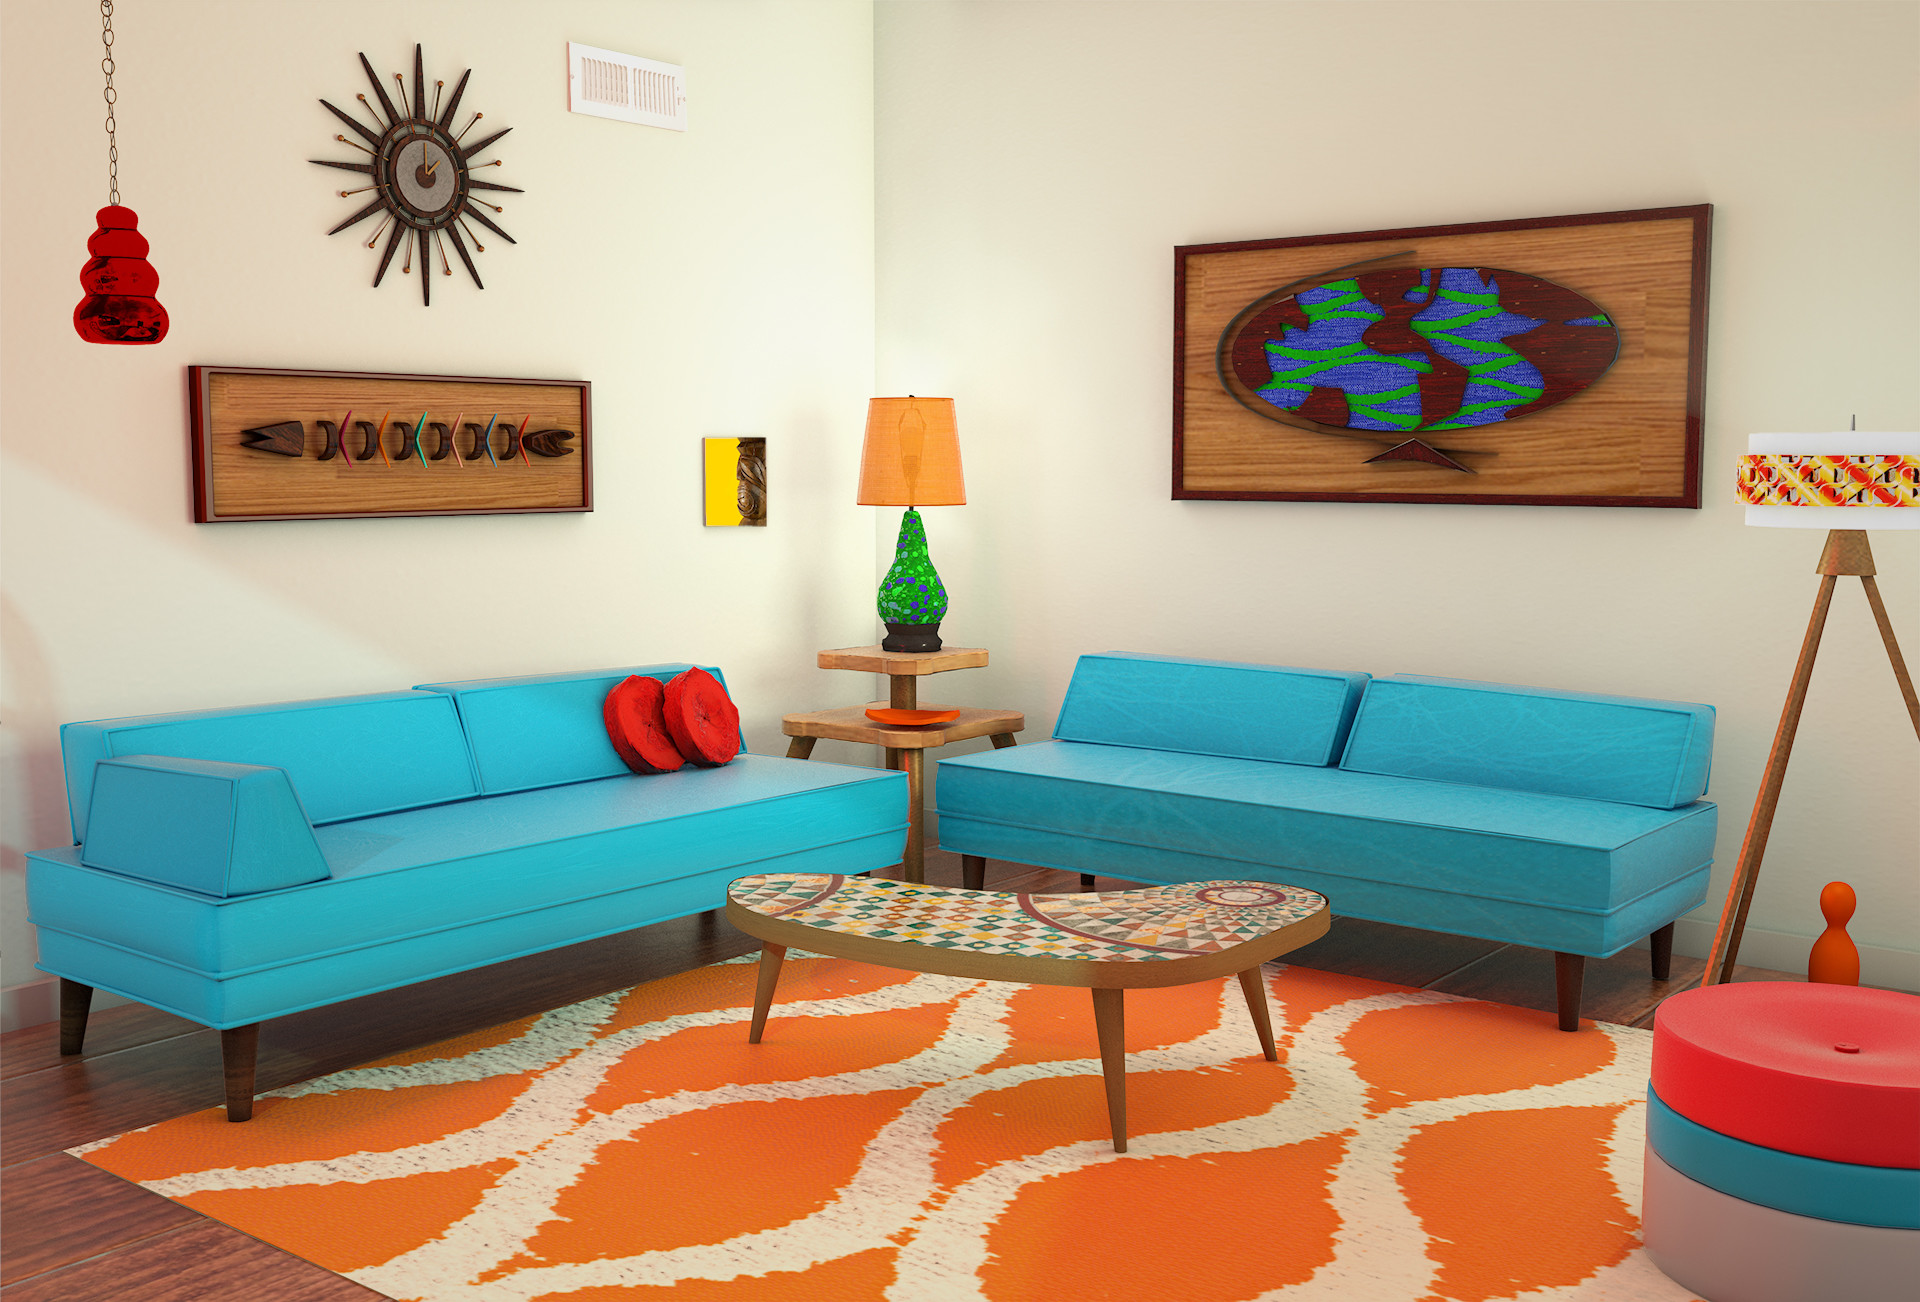 70s inspired living room